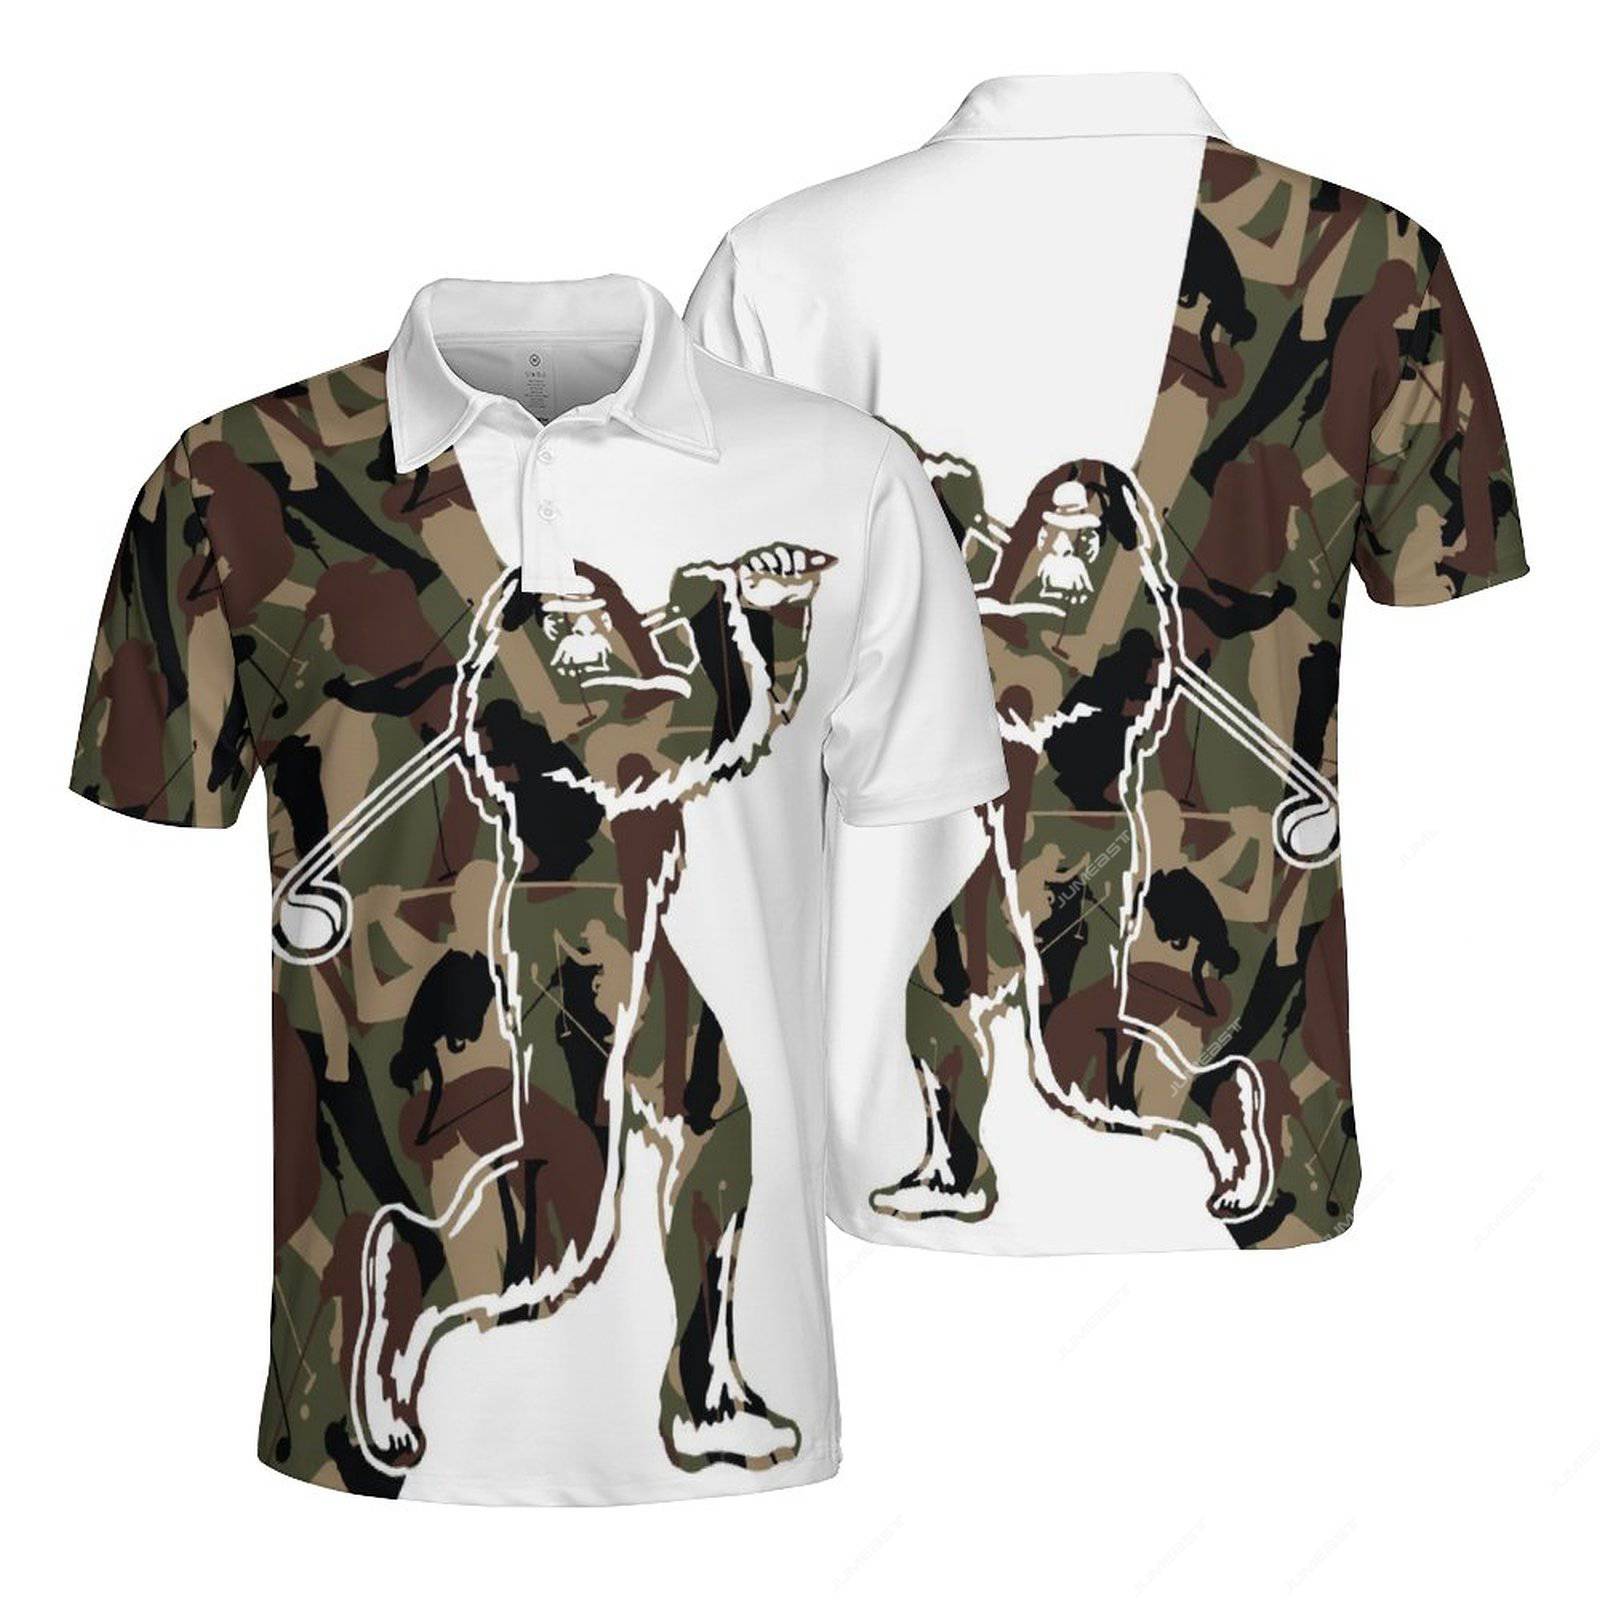 Jumeast golf uomini camicia camoia mimetica che caccia camuflage magliette morbide magliette militari Light Accademia Accademia abiti da vitalità giovanile